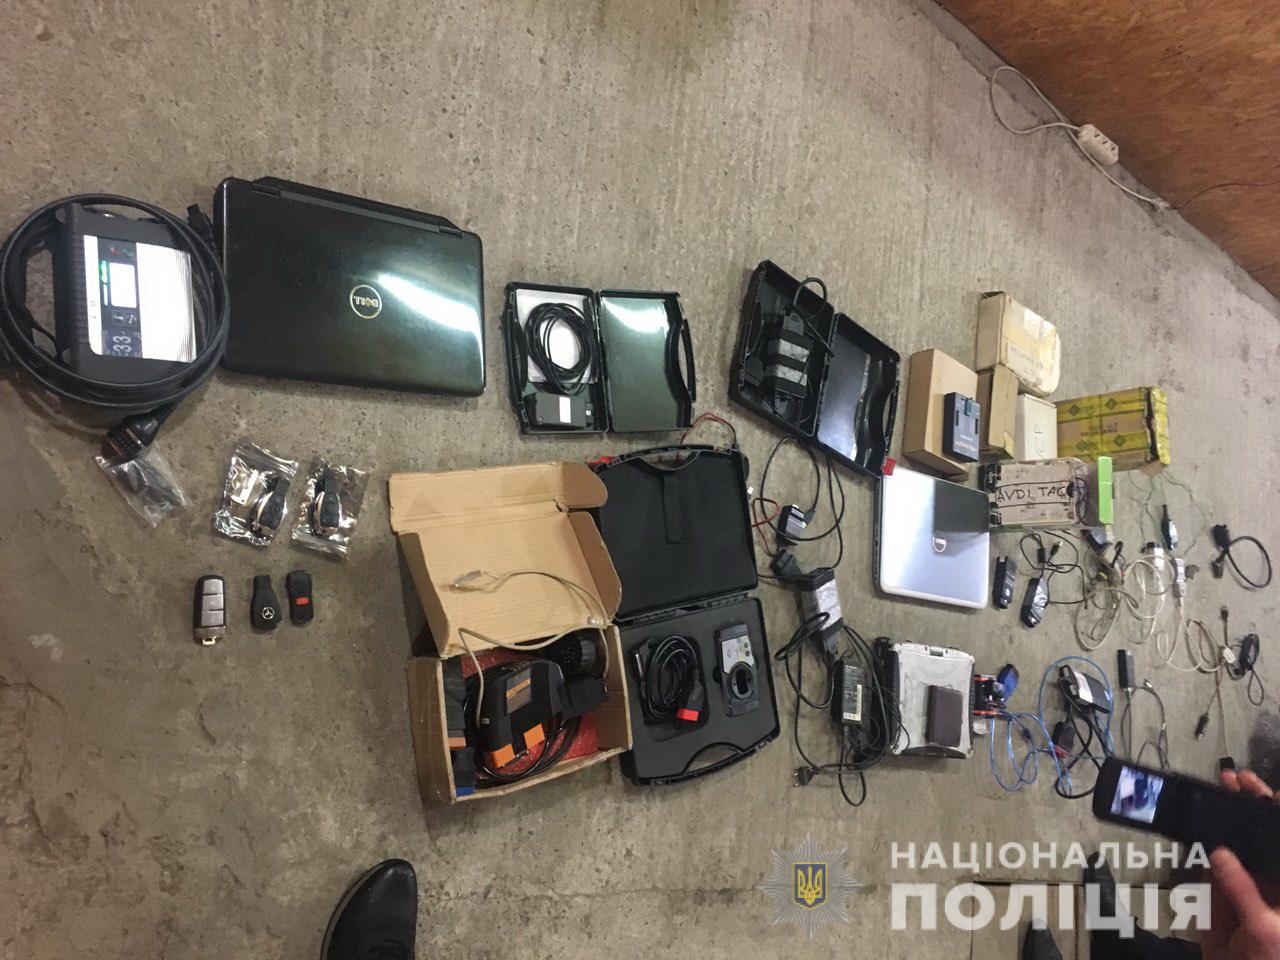 Мукачівця затримали за зберігання незаконного обладнання для протиправної діяльності (ФОТО)